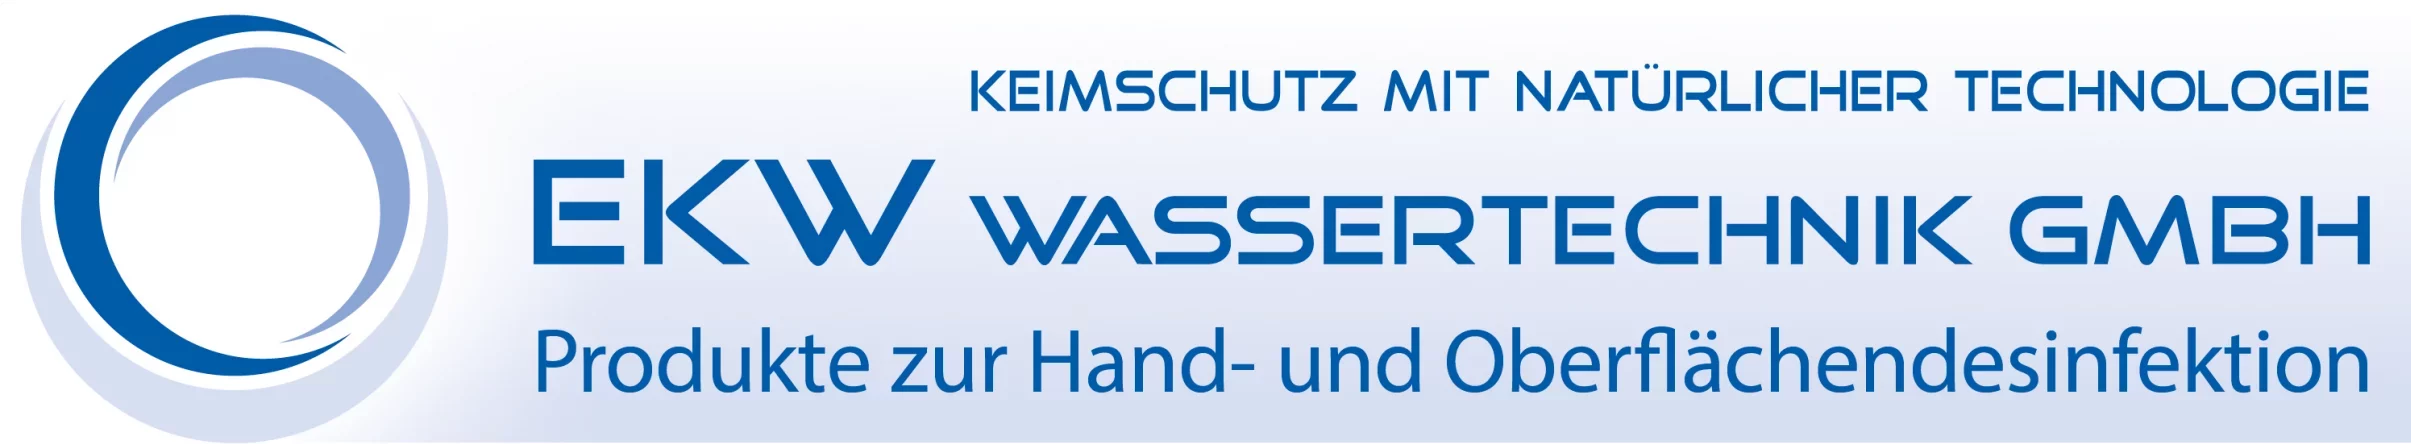 EKW Wassertechnik GmbH